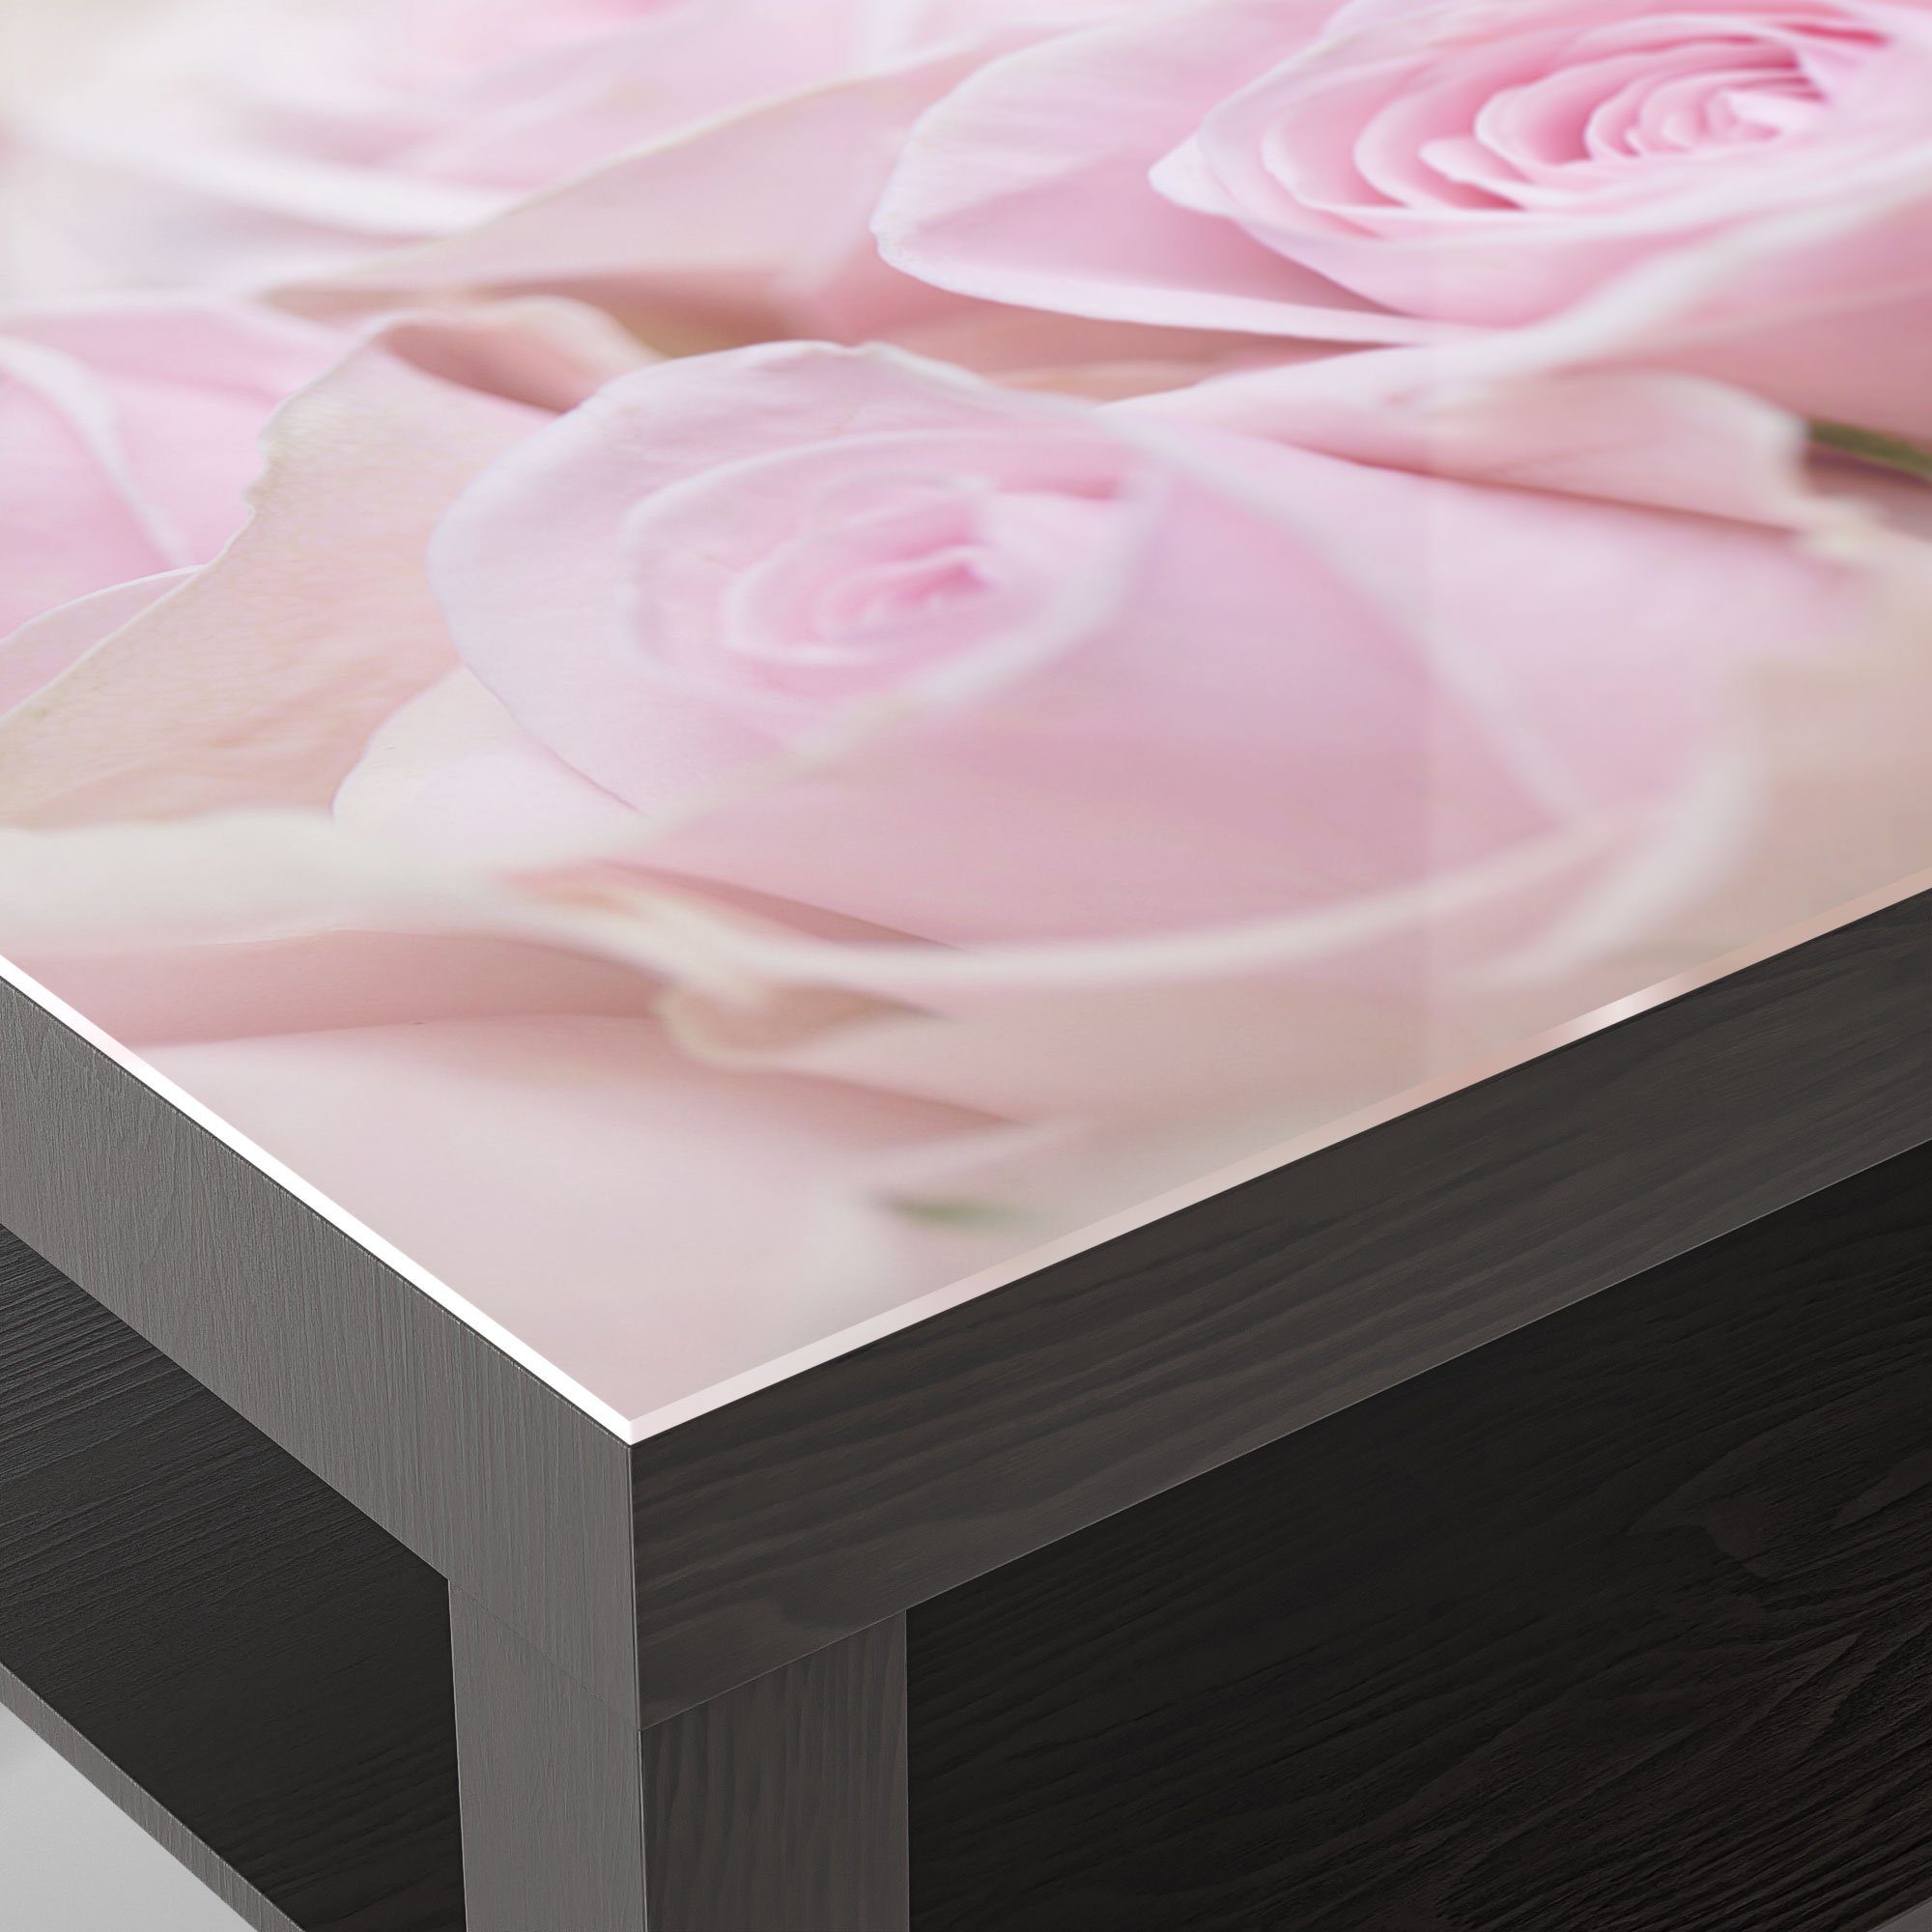 Rosenblüten', 'Zarte Glas Schwarz Beistelltisch DEQORI Couchtisch modern Glastisch